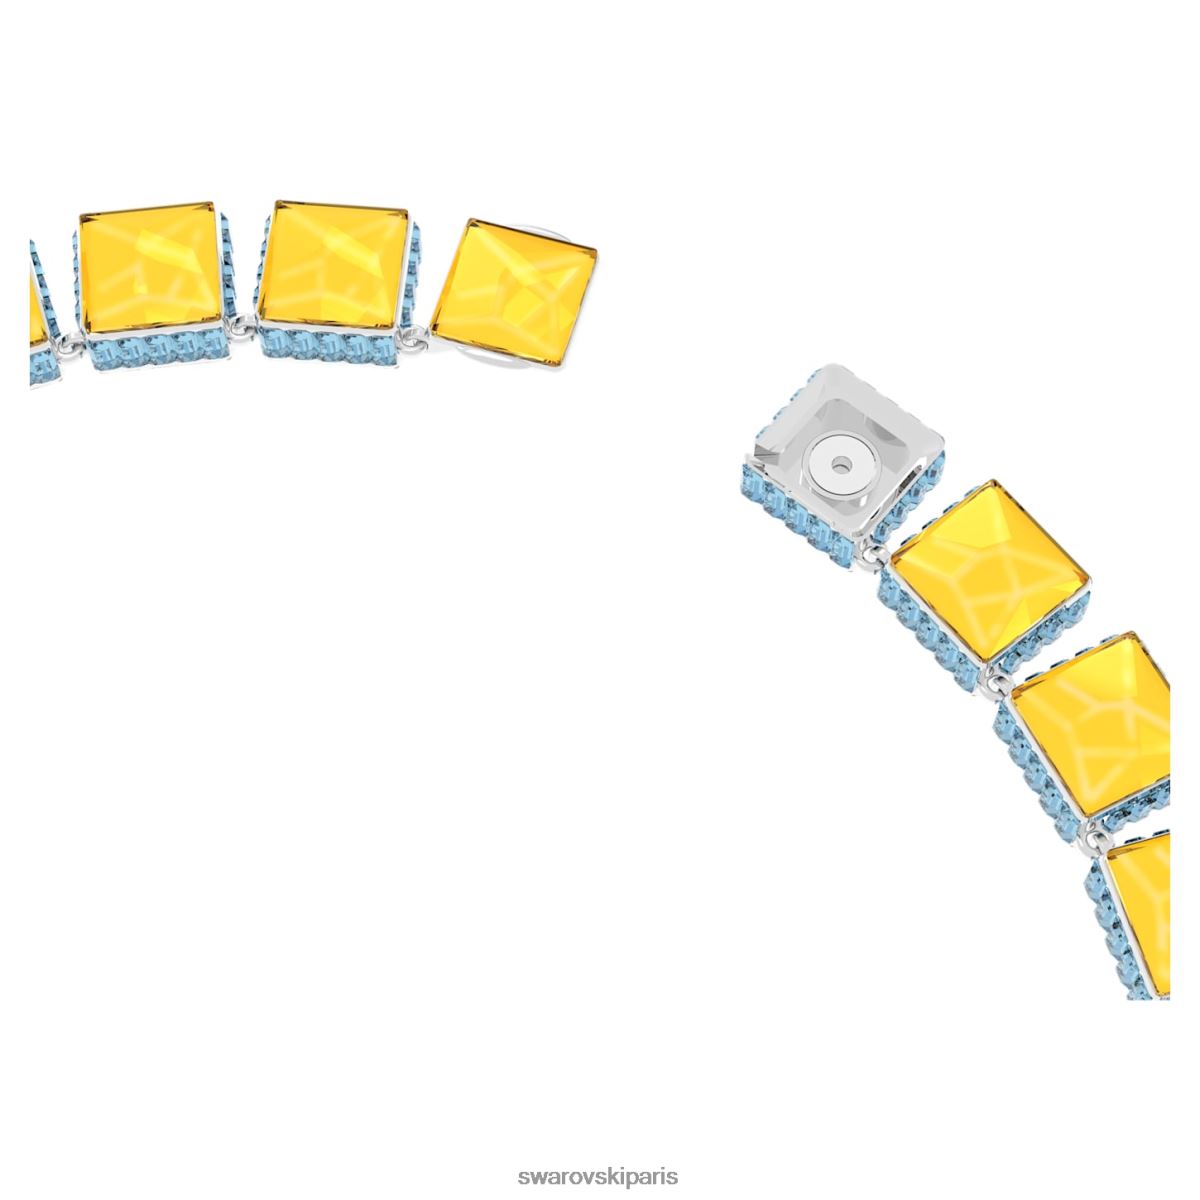 bijoux Swarovski collier orbitale fermeture magnétique, coupe carrée, multicolore, rhodié RZD0XJ130